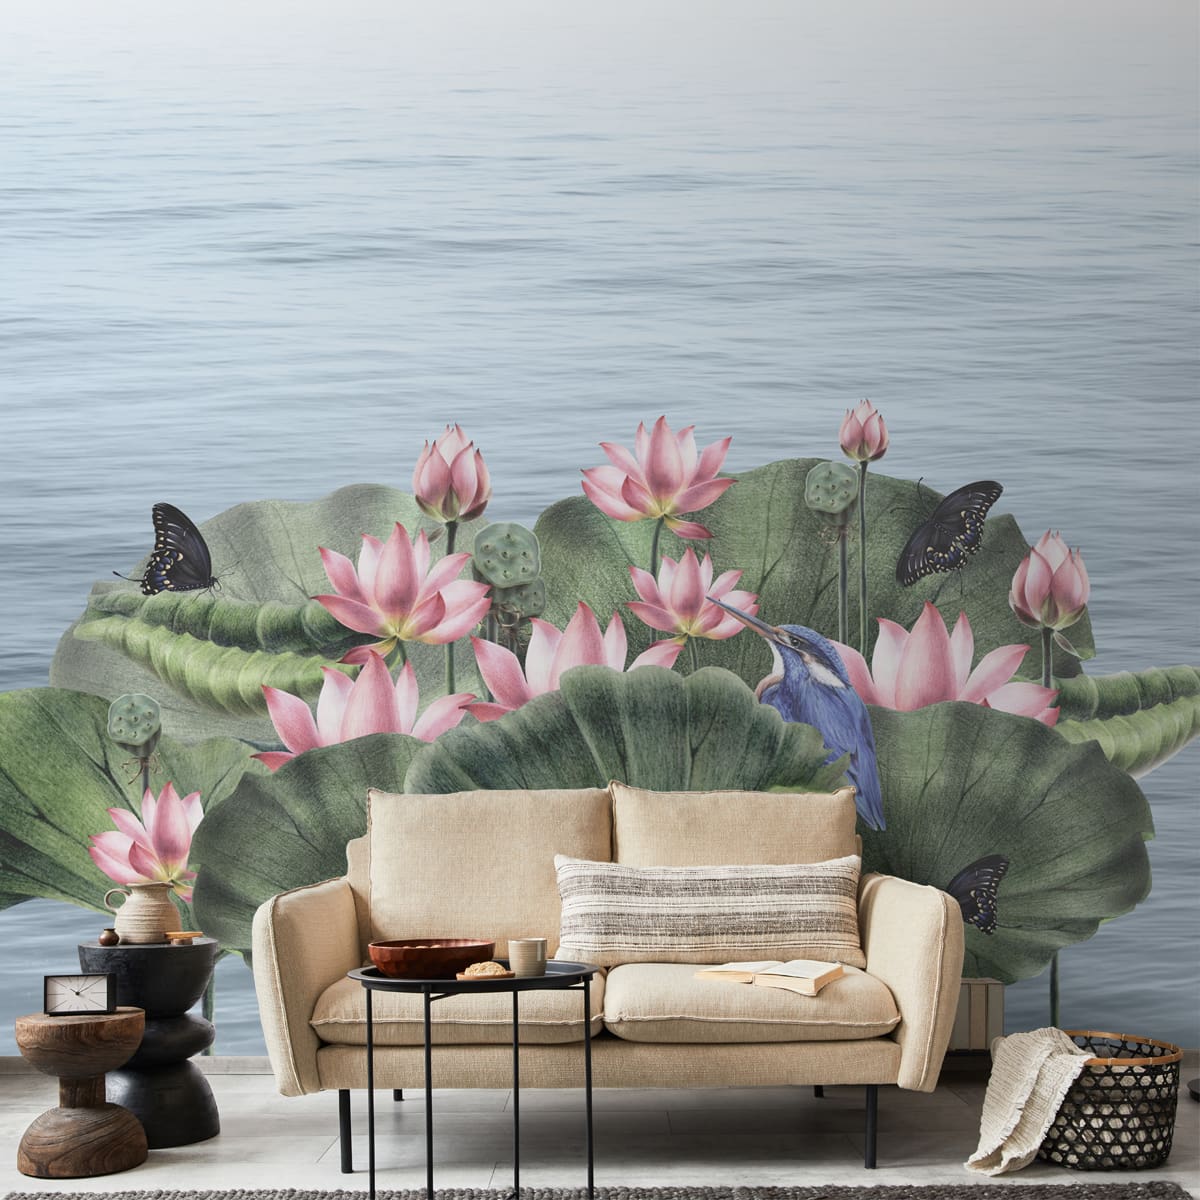 Padma, A Beautiful Lotuses Wallpaper for Walls